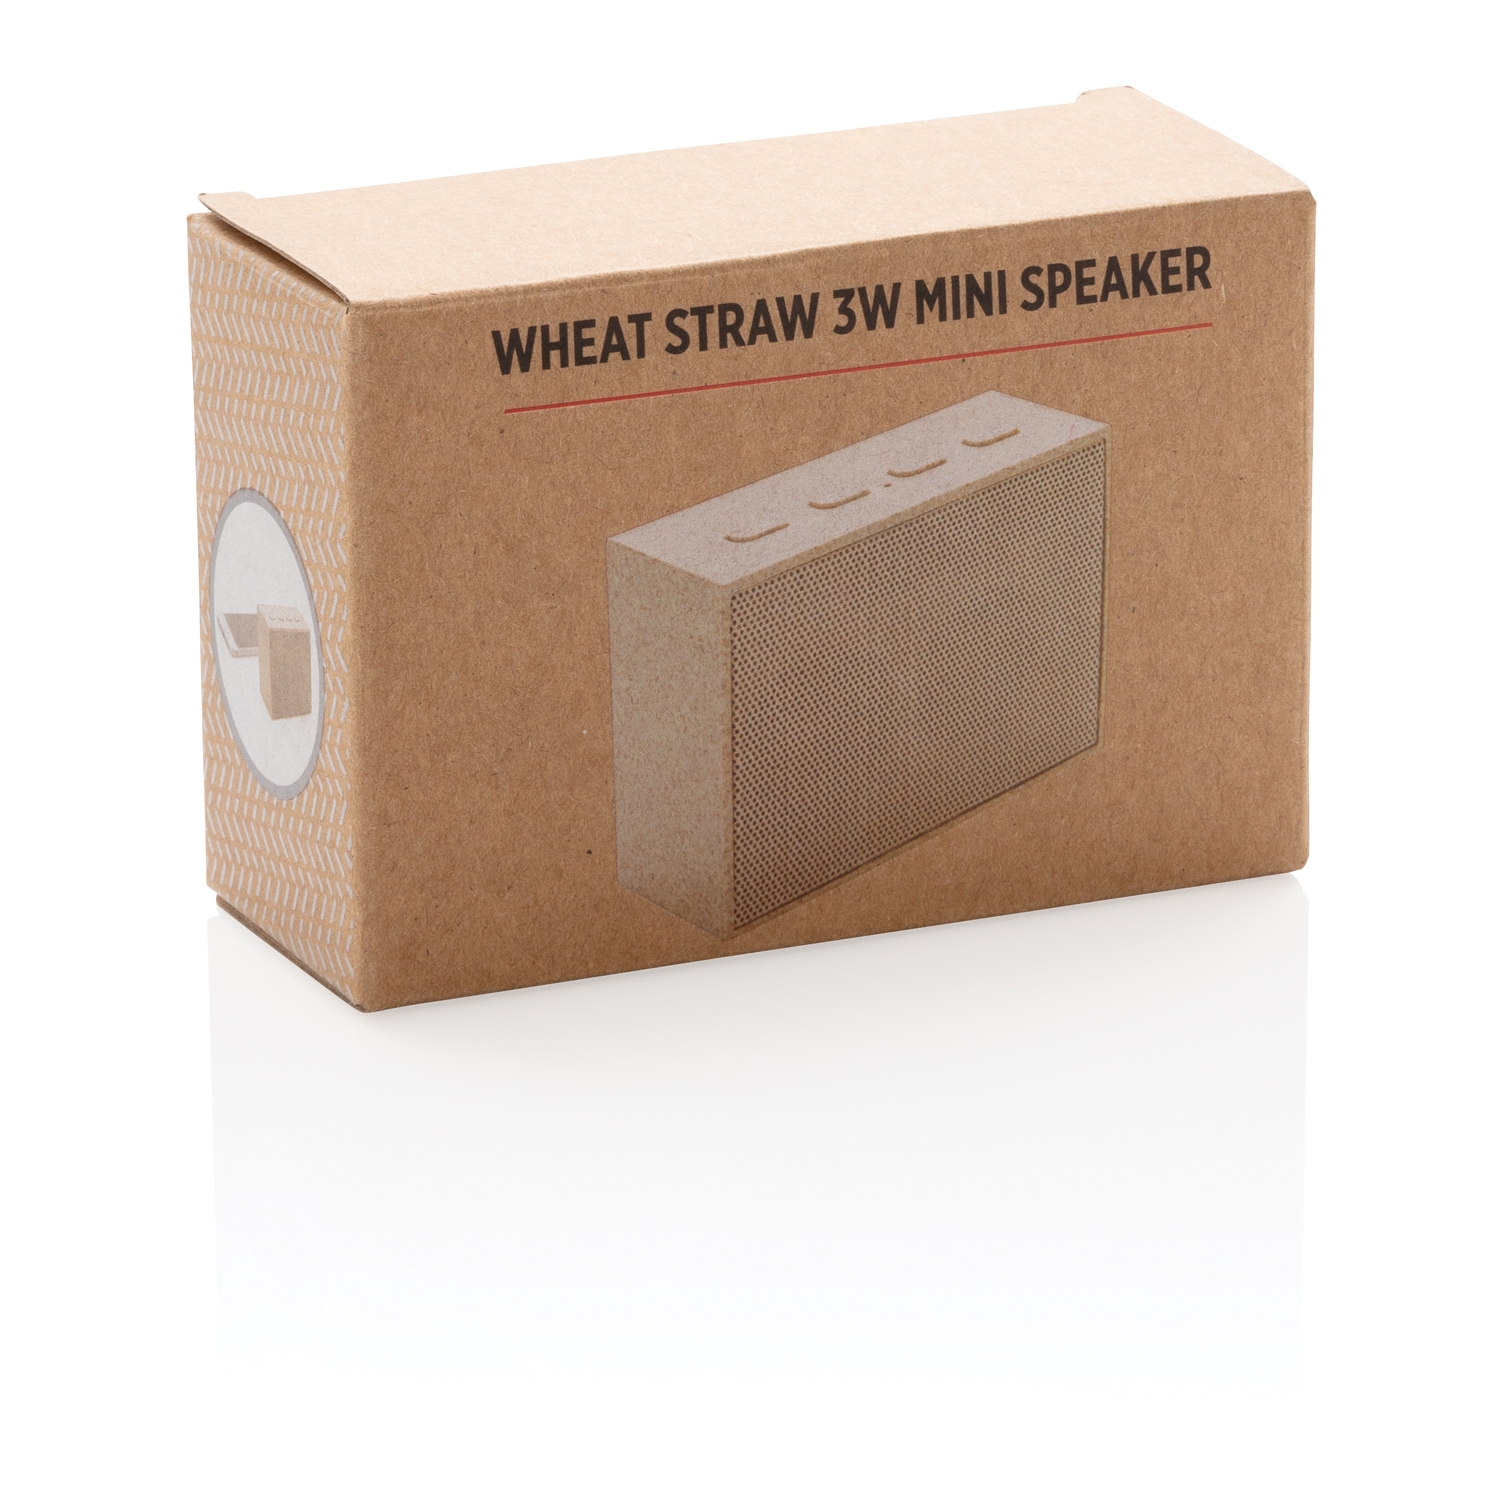 Мини-колонка Wheat Straw, 3 Вт, коричневый, волокно пшеничной соломы; abs